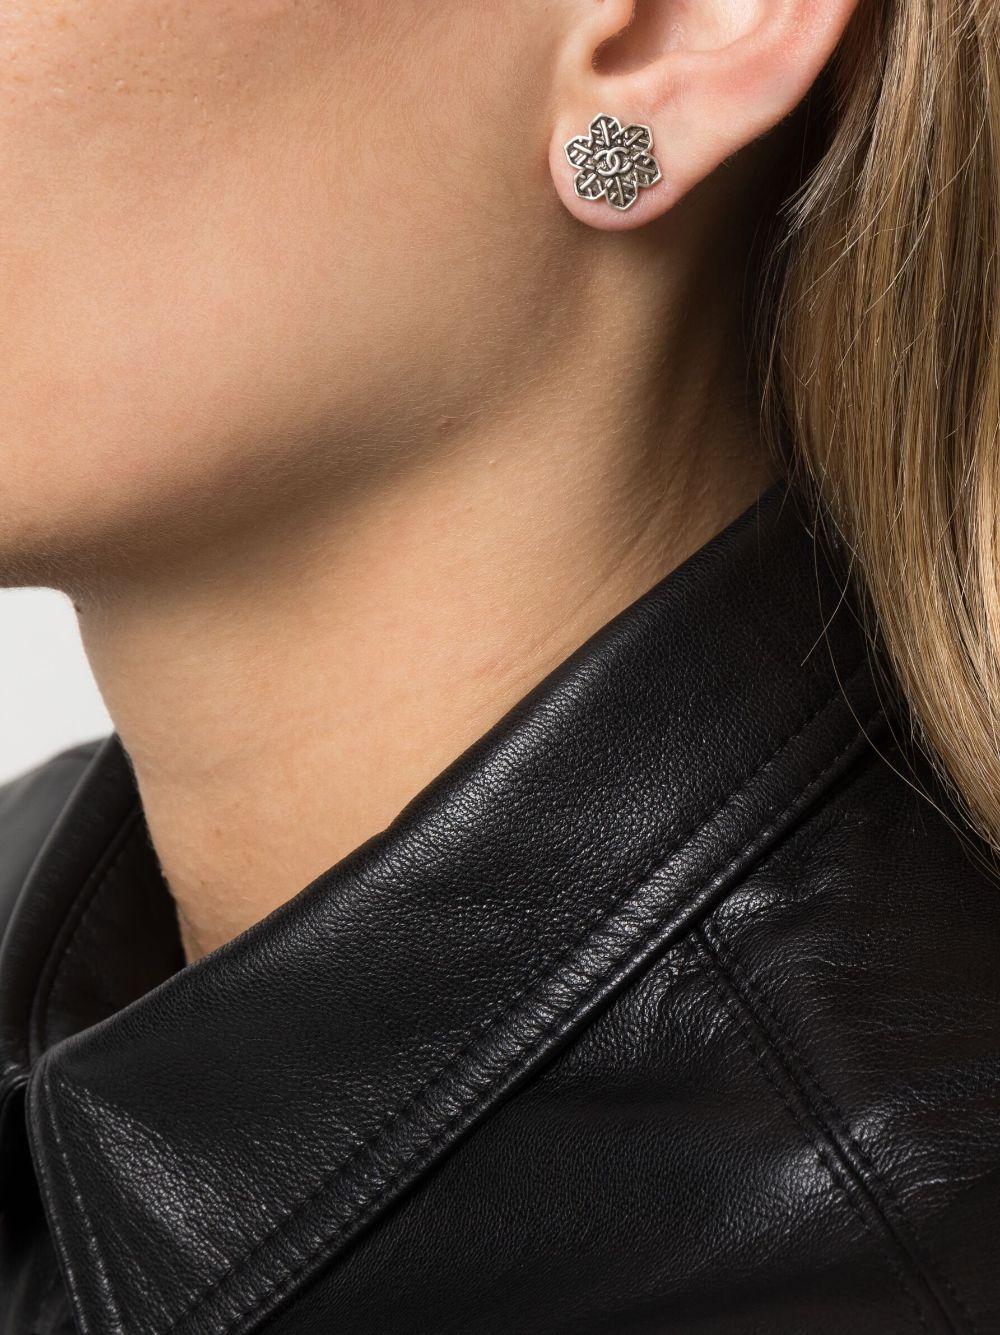 Silberfarbene Chanel Schneeflocken-Ohrringe mit folgenden Eigenschaften: Schneeflockenmotiv, charakteristisches, ineinandergreifendes CC-Logo, Stiftverschluss, für durchstochene Ohren, Plakette auf der Rückseite.
CIRCA 2019
Diese Ohrringe werden als